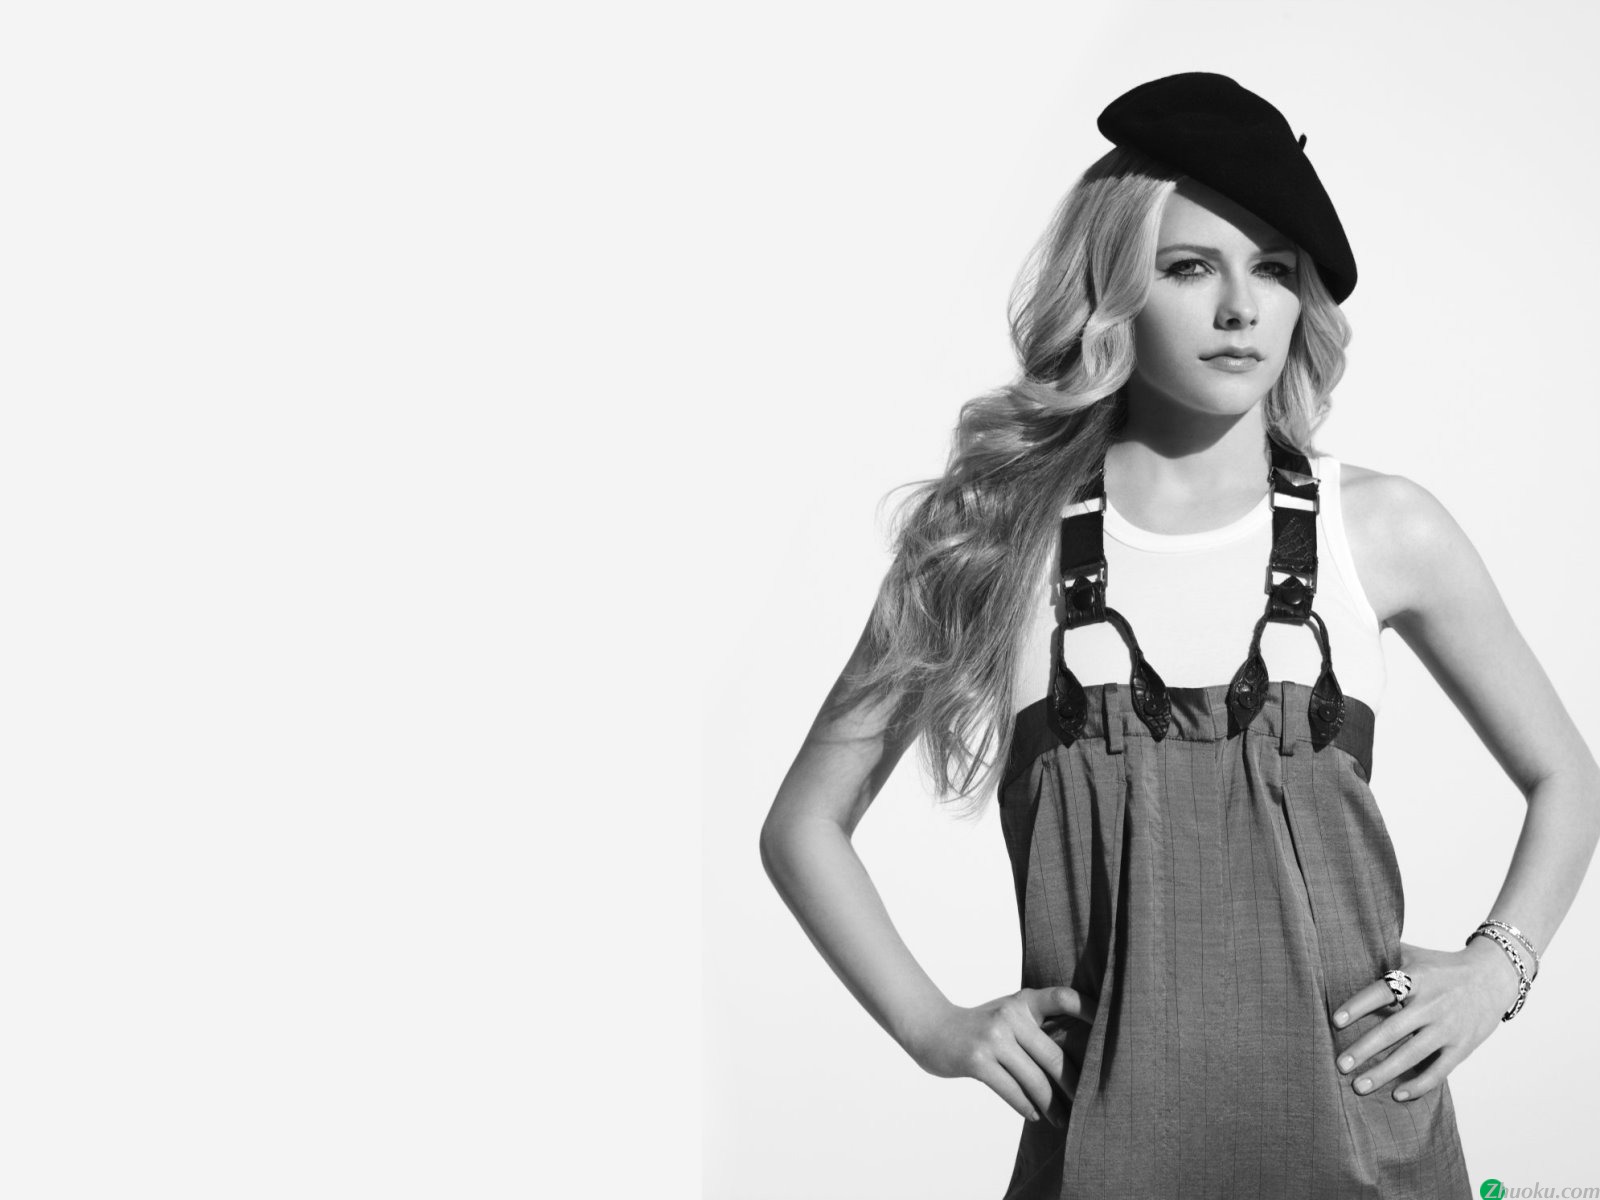 壁纸1600x1200艾薇儿 Avril Lavigne 壁纸10壁纸 艾薇儿 Avril Lavigne壁纸 艾薇儿 Avril Lavigne图片 艾薇儿 Avril Lavigne素材 明星壁纸 明星图库 明星图片素材桌面壁纸